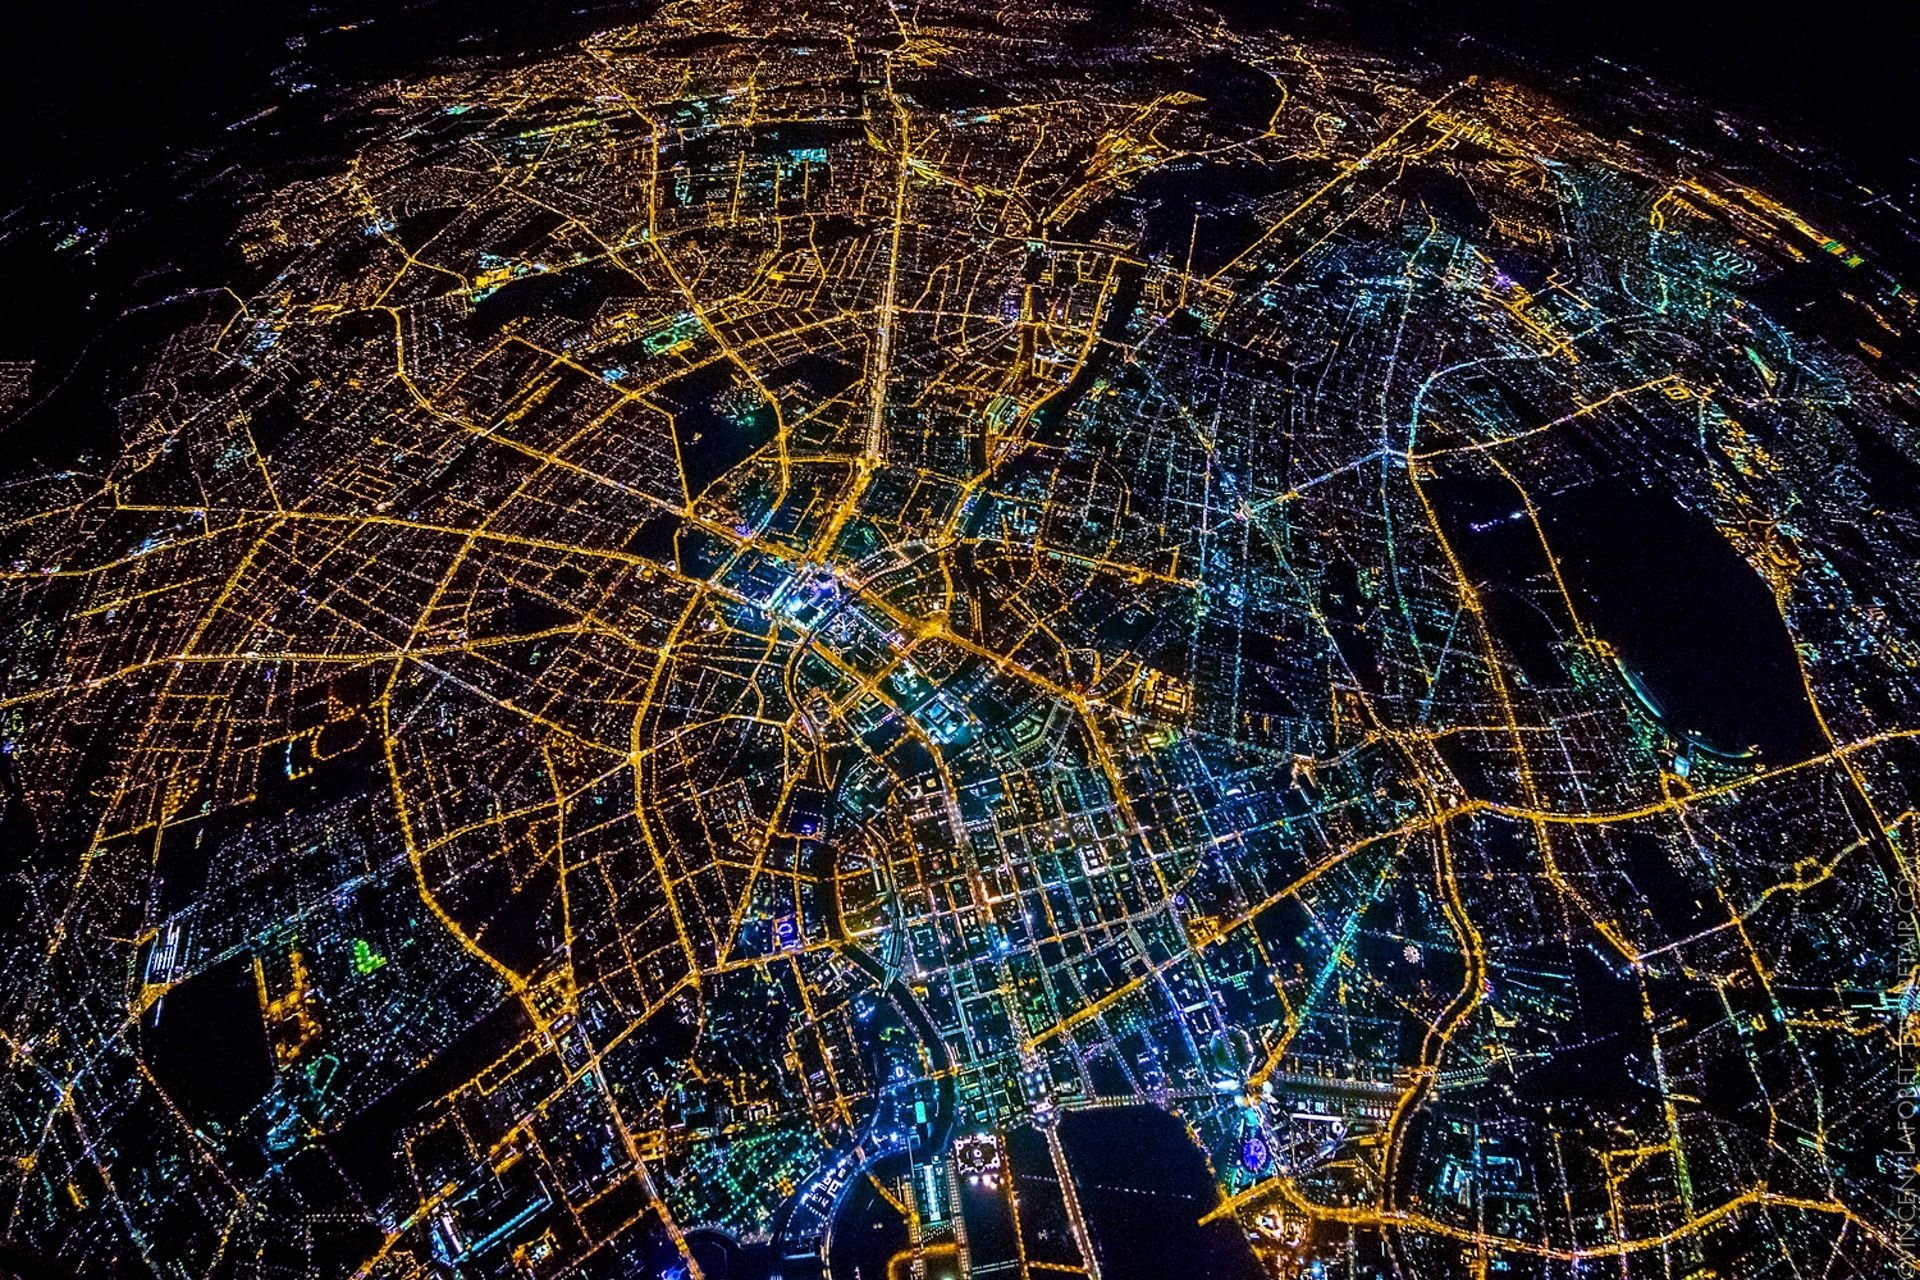 Space view. Берлин с высоты птичьего полета ночью. Ночной Берлин со спутника. Города из космоса. Берлин ночью из космоса.